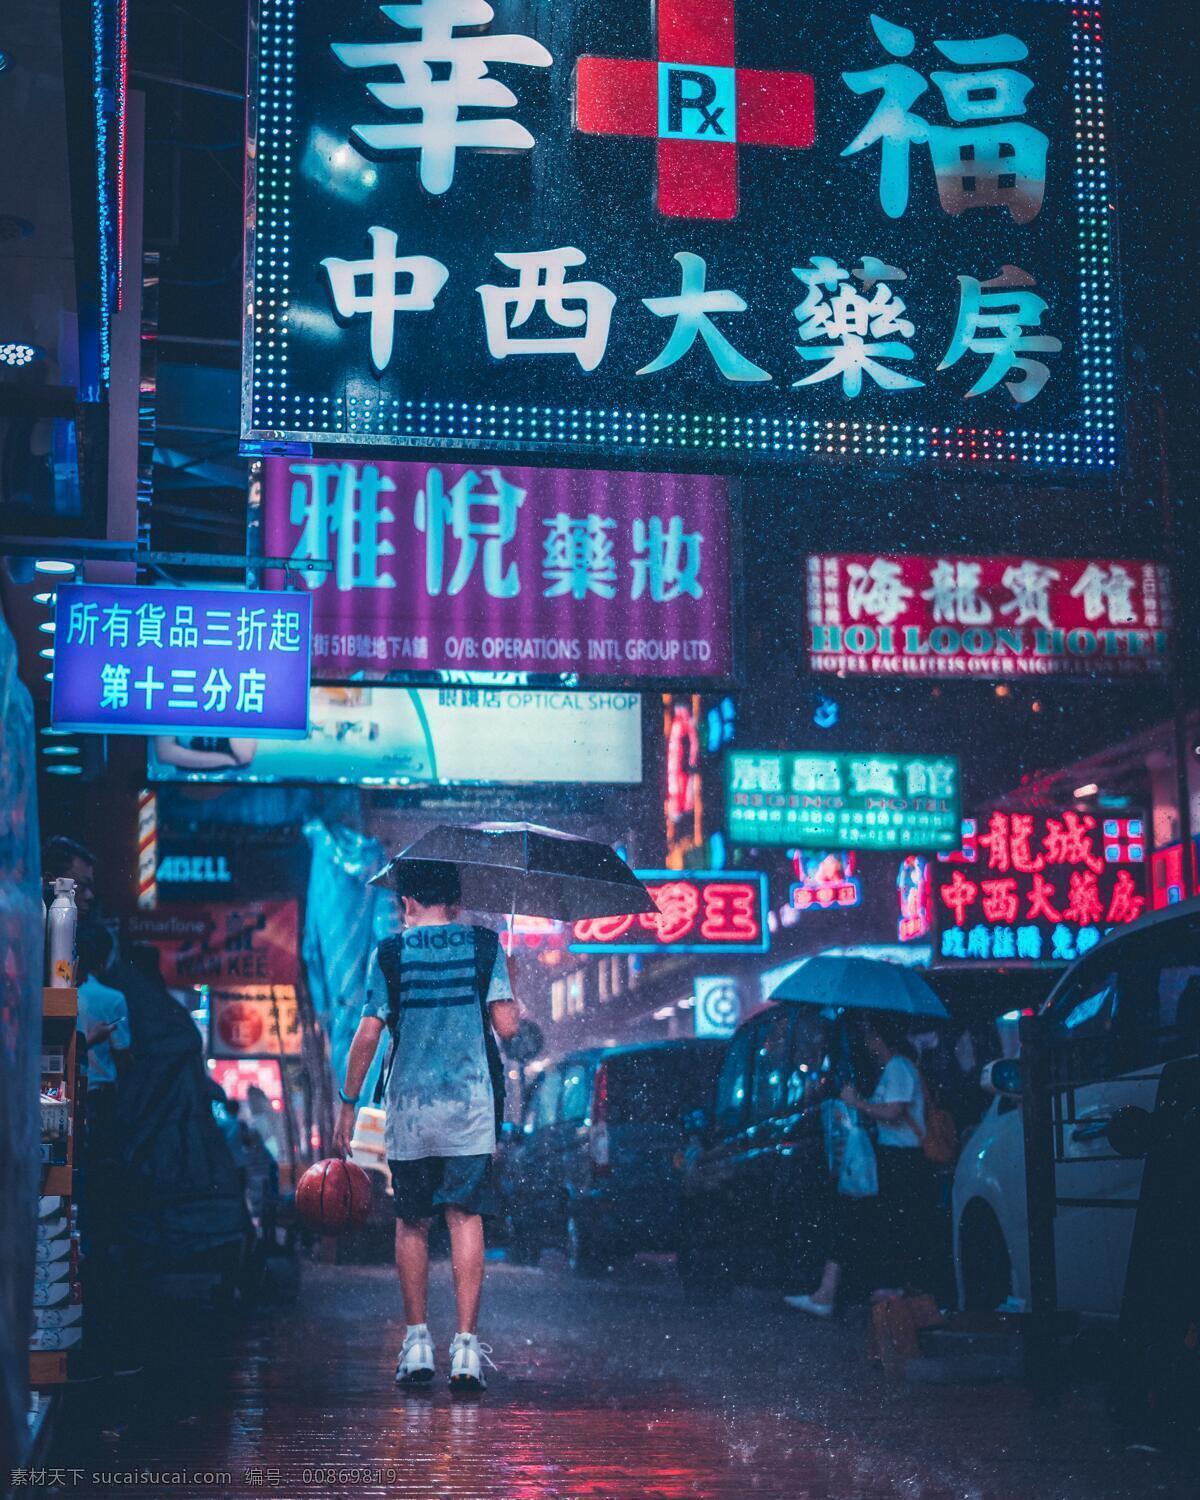 香港雨夜 香港 港式 广告牌 男人 男孩 孩子 少年 篮球 背影 街拍 霓虹 霓虹灯 街道 大街 广告 雨夜 阴郁 阴霾 阴天 天 雨 下雨 阴天快乐 下雨快乐 雨水 天气 心情 生活百科 生活素材